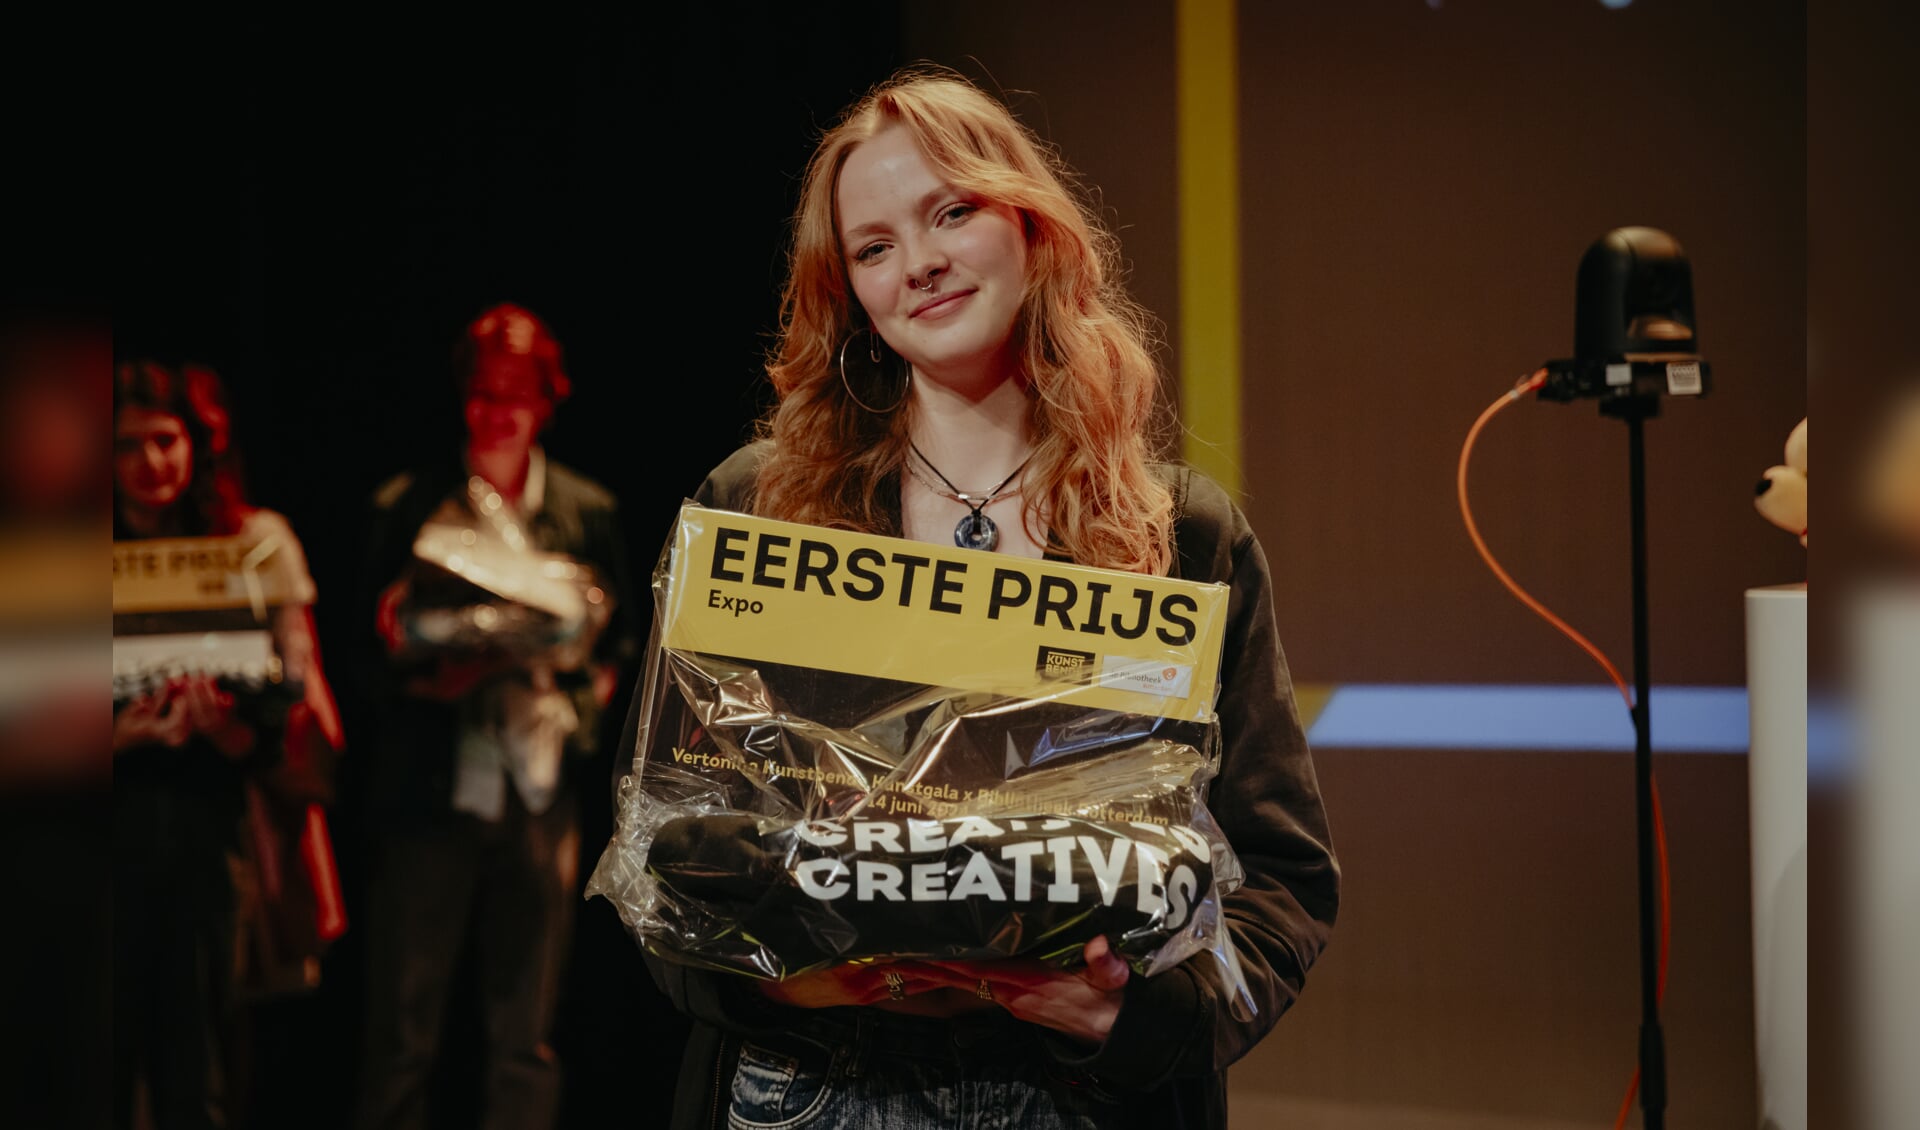 Mila Konings won de eerste prijs in de categorie ‘Expo’.